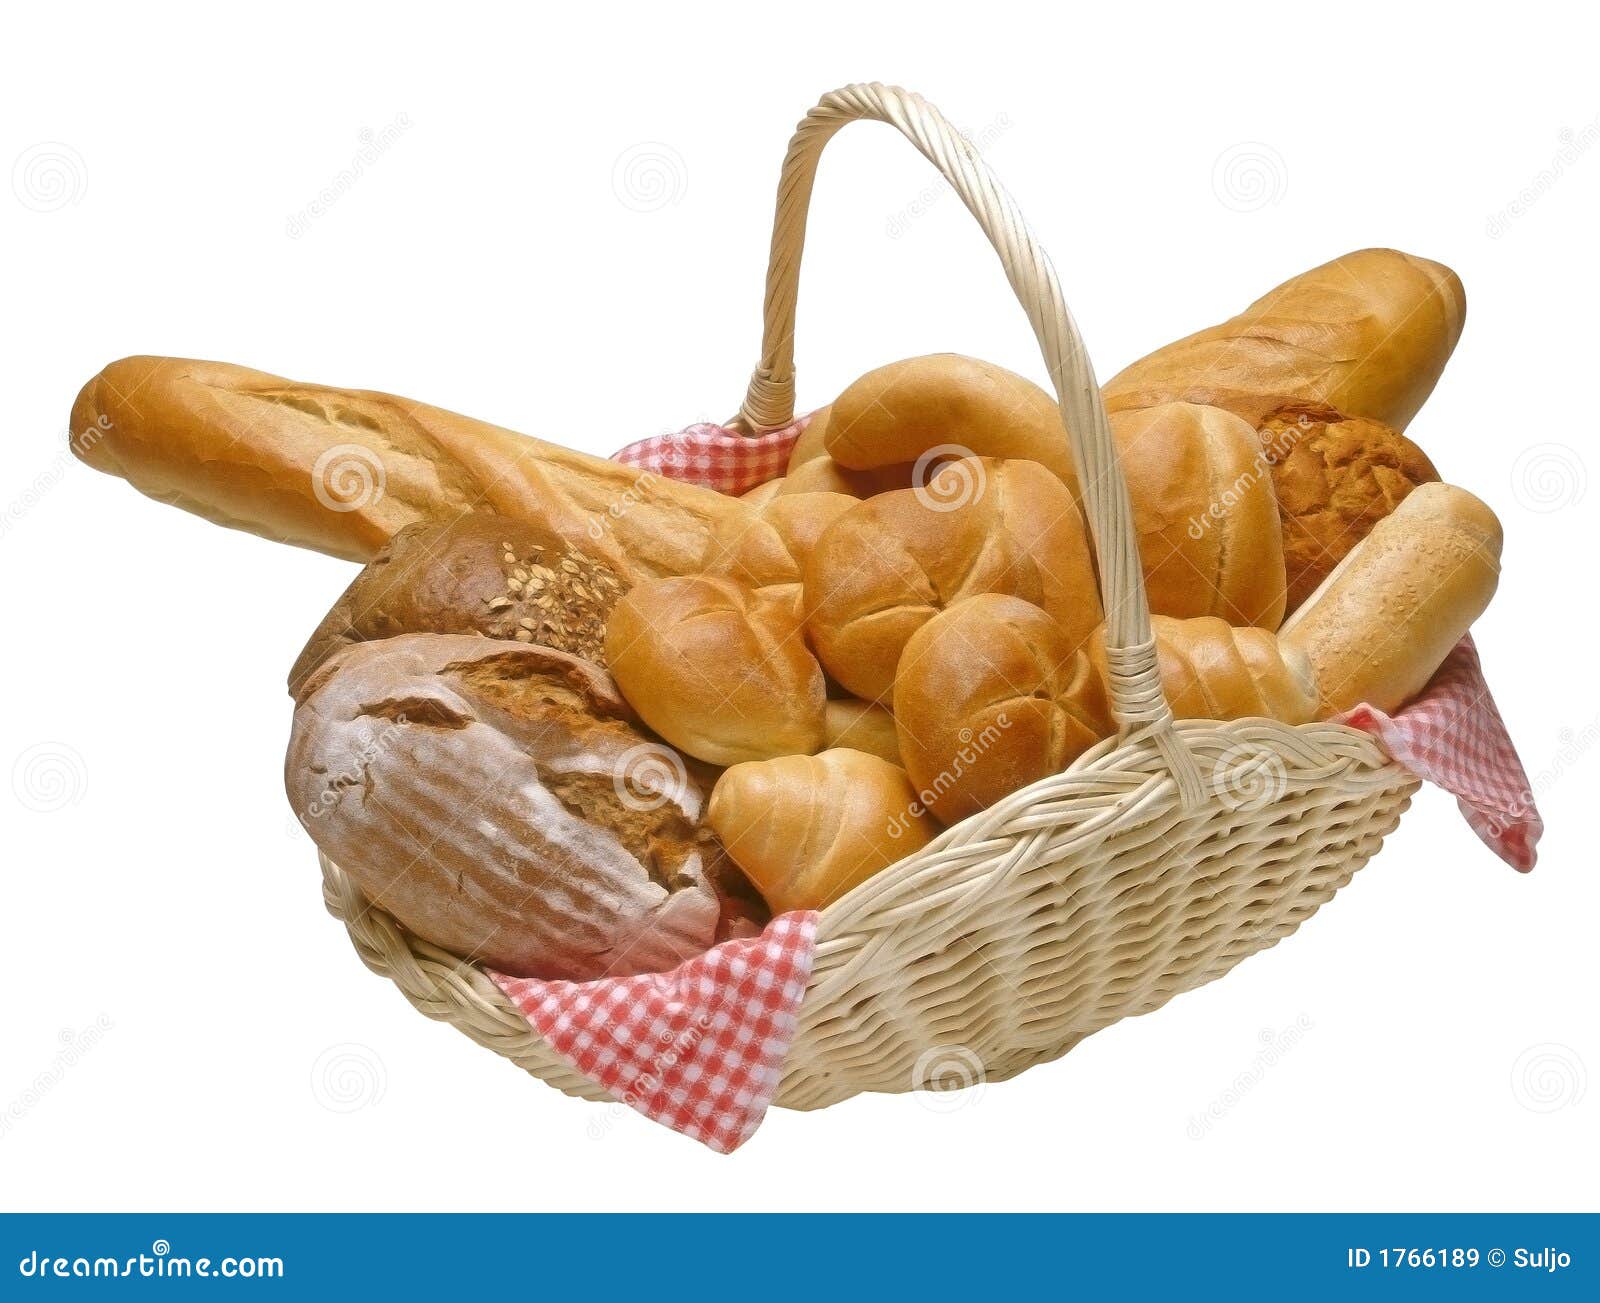  Mand  brood stock afbeelding Afbeelding bestaande uit 